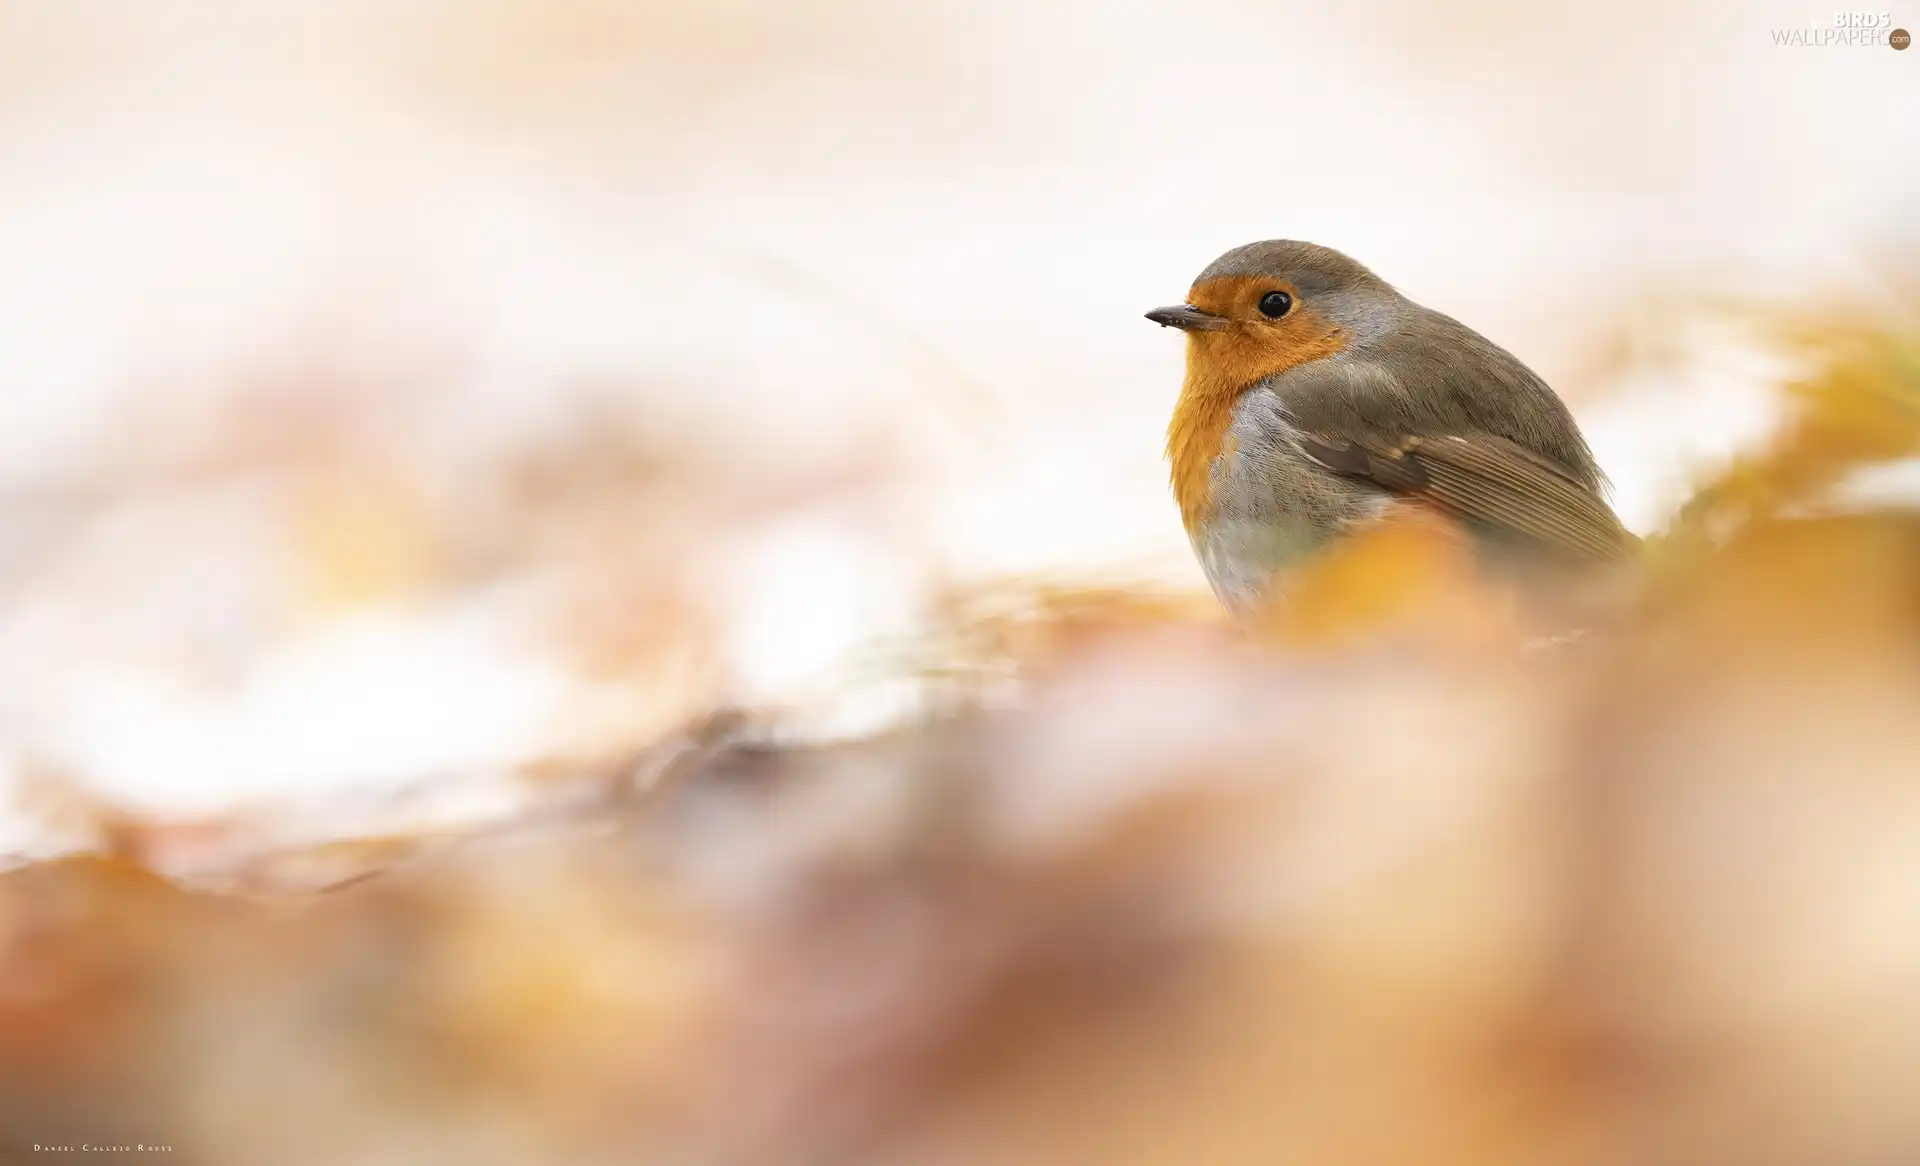 robin, fuzzy, background, Bird